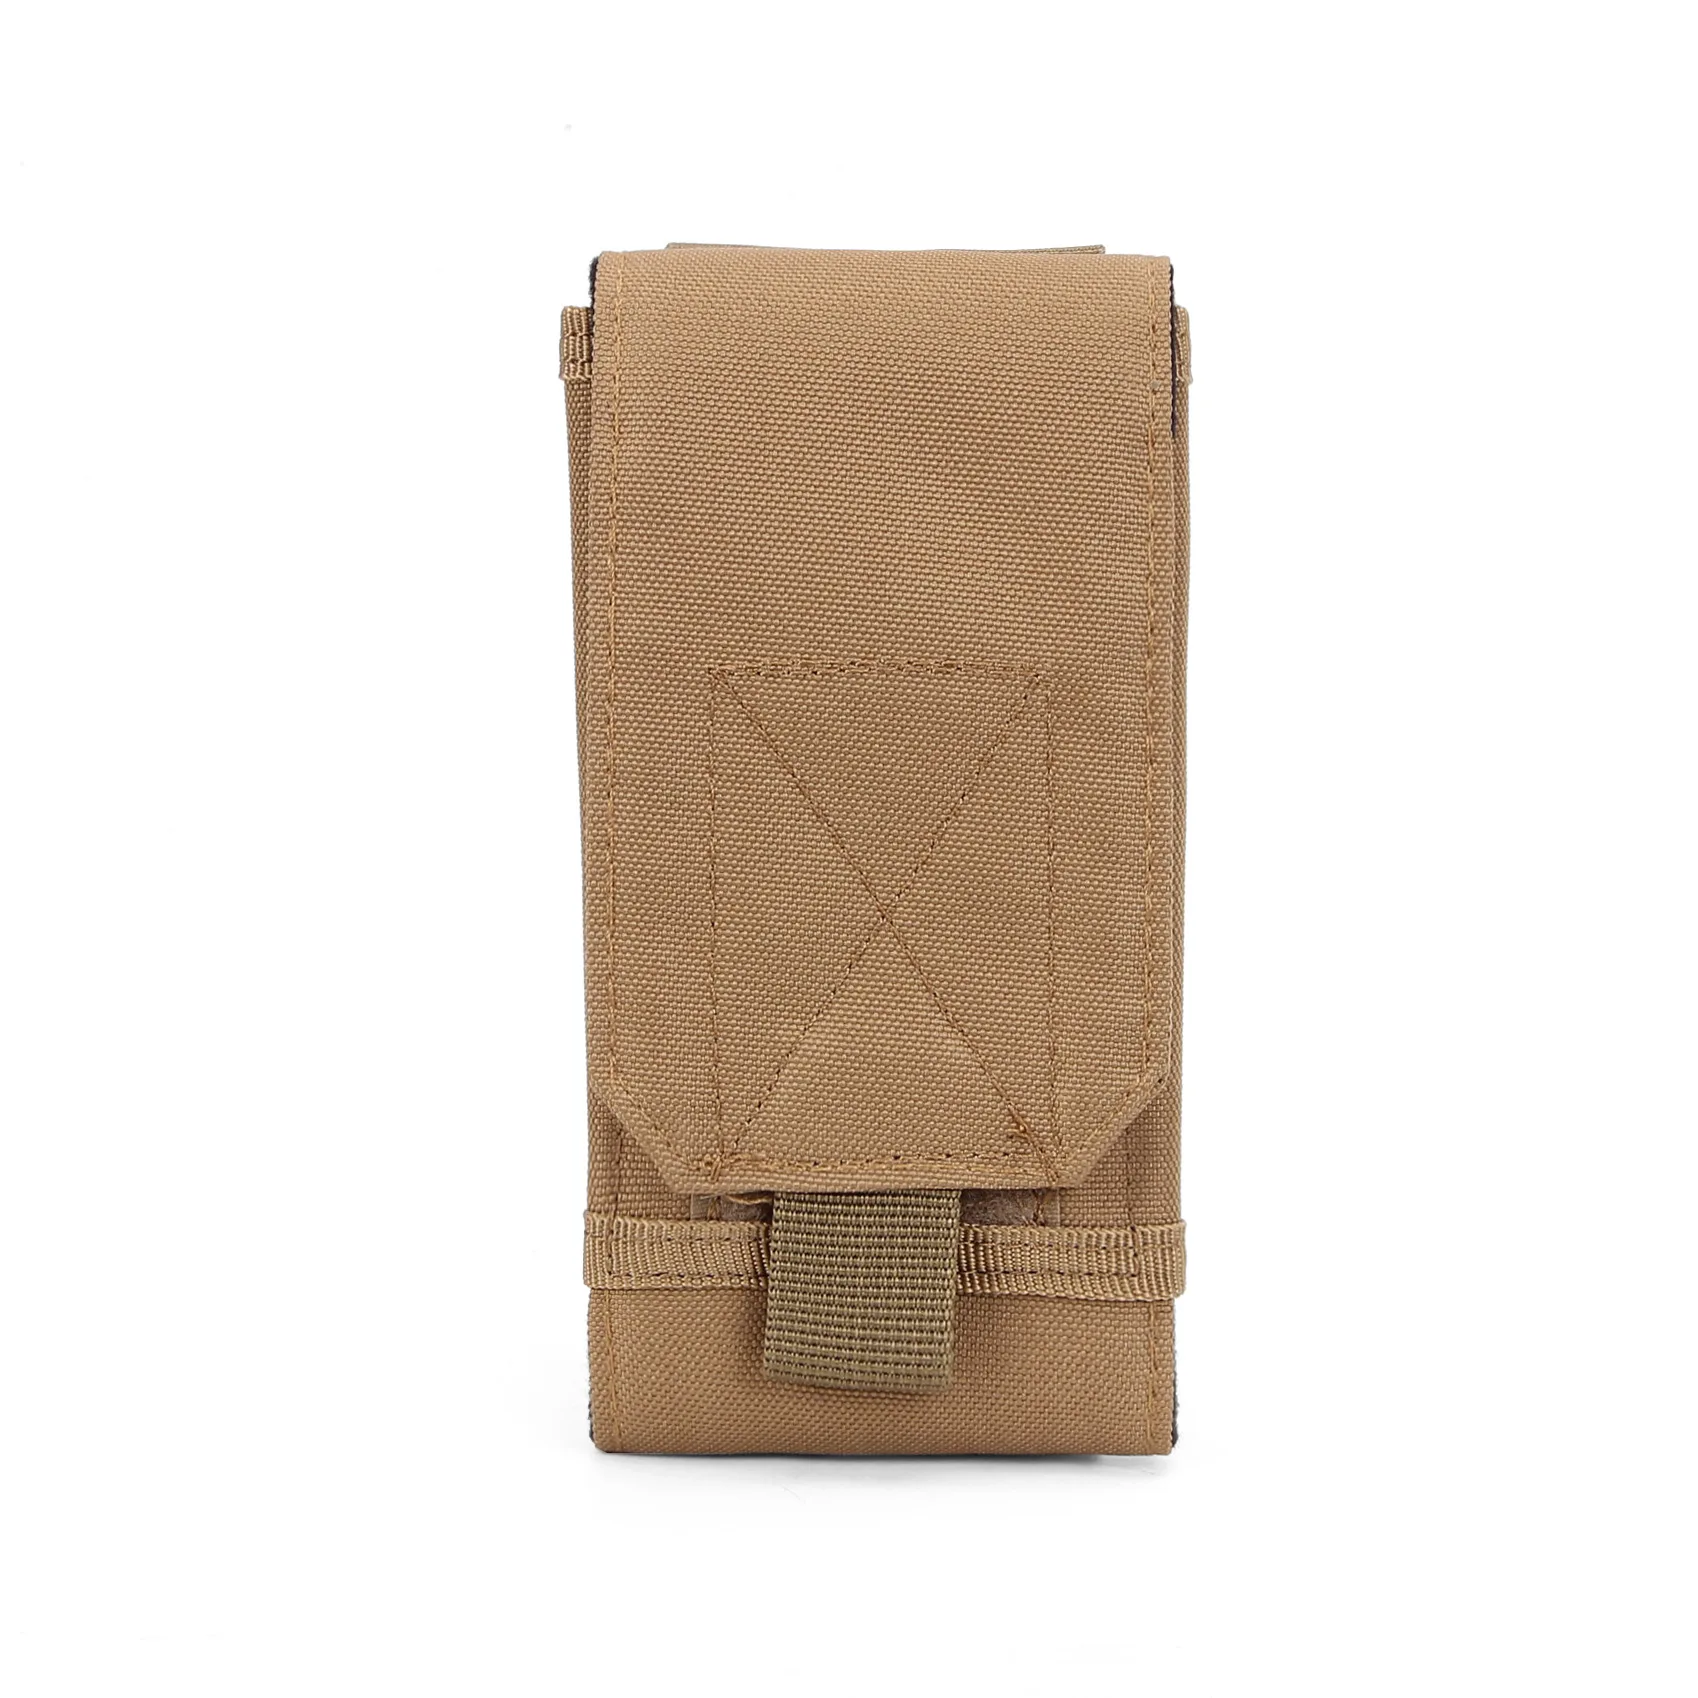 Новое поступление флеш-распродажа Военная поясная сумка На открытом воздухе Molle Pocket водонепроницаемая сумка для мобильного телефона многофункциональная спортивная сумка для рюкзака - Цвет: Khaki